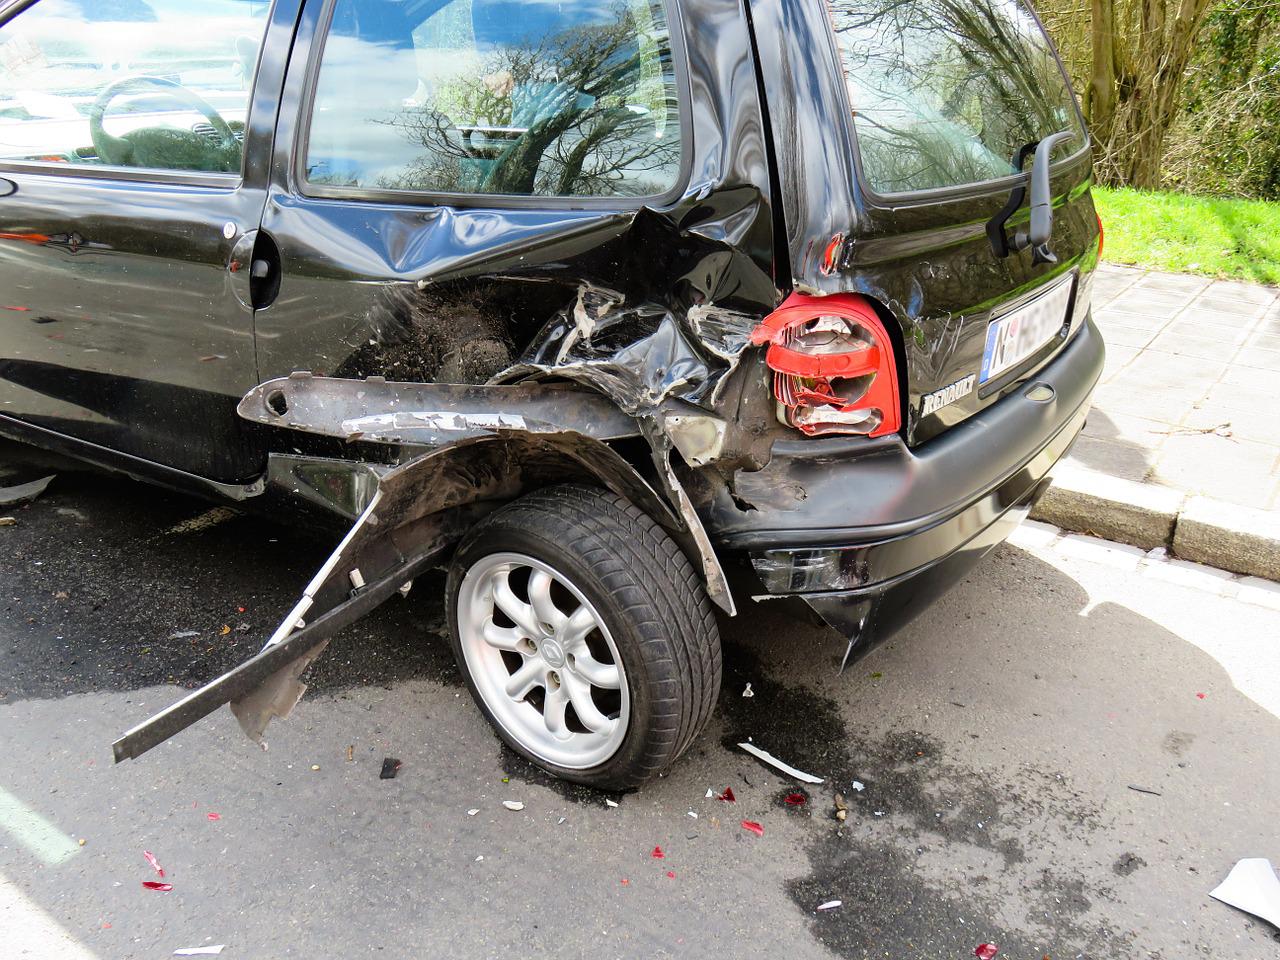 สำหรับในกรณีอุบัติเหตุทางรถยนต์ แต่หากมีผู้บาดเจ็บ หรือรถยนต์ที่ประสบเหตุกีดขวางการจราจร เราต้องรีบโทรหาทริปเปิลซีโร (000) ทันที